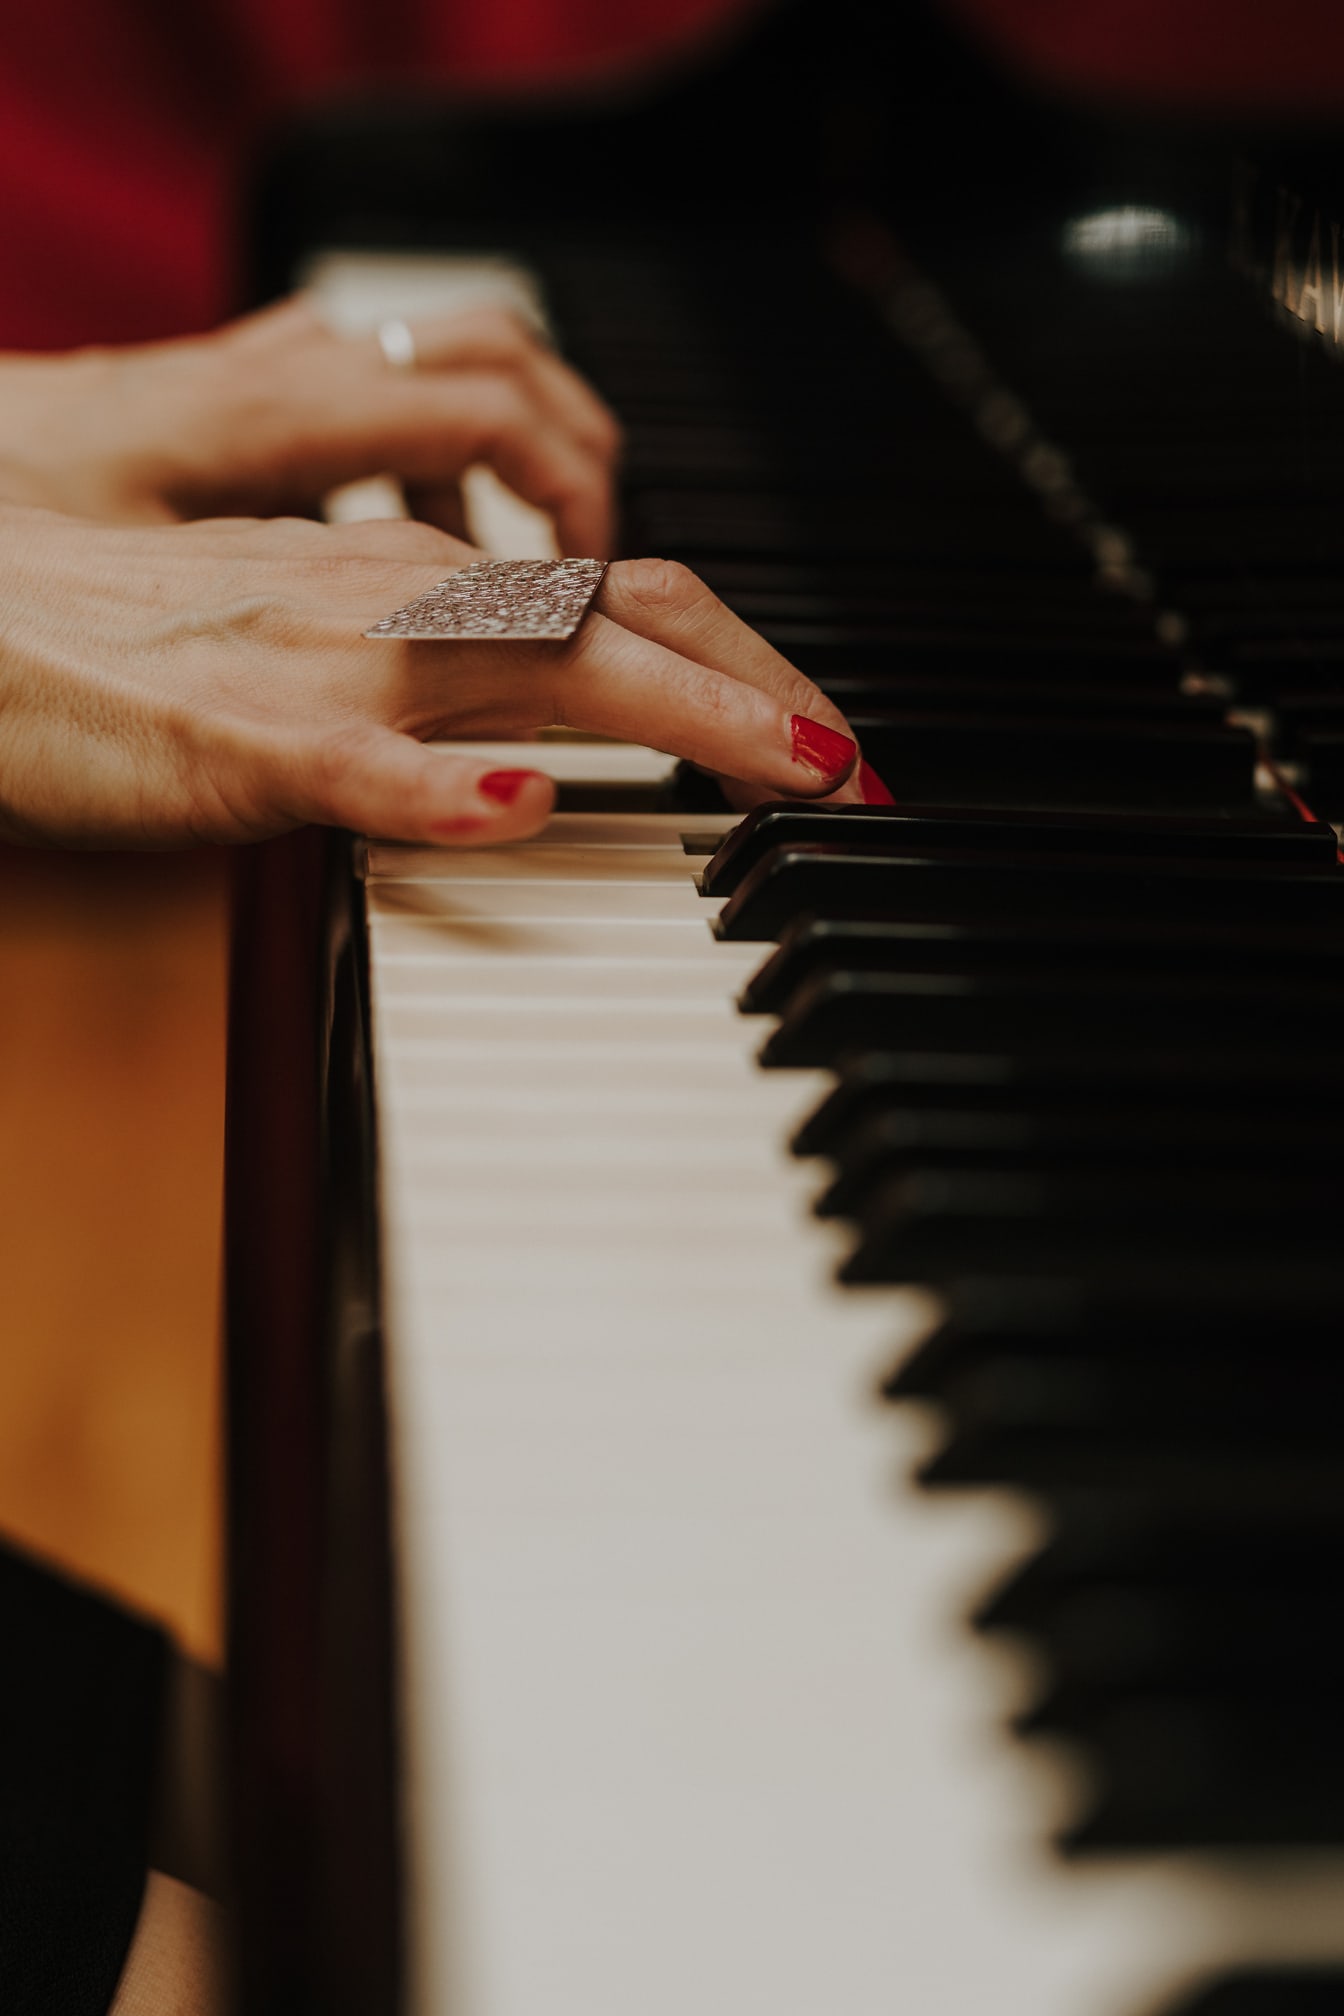 Zbliżenie dłoni grającej na pianinie z czerwonym lakierem do paznokci na palcach